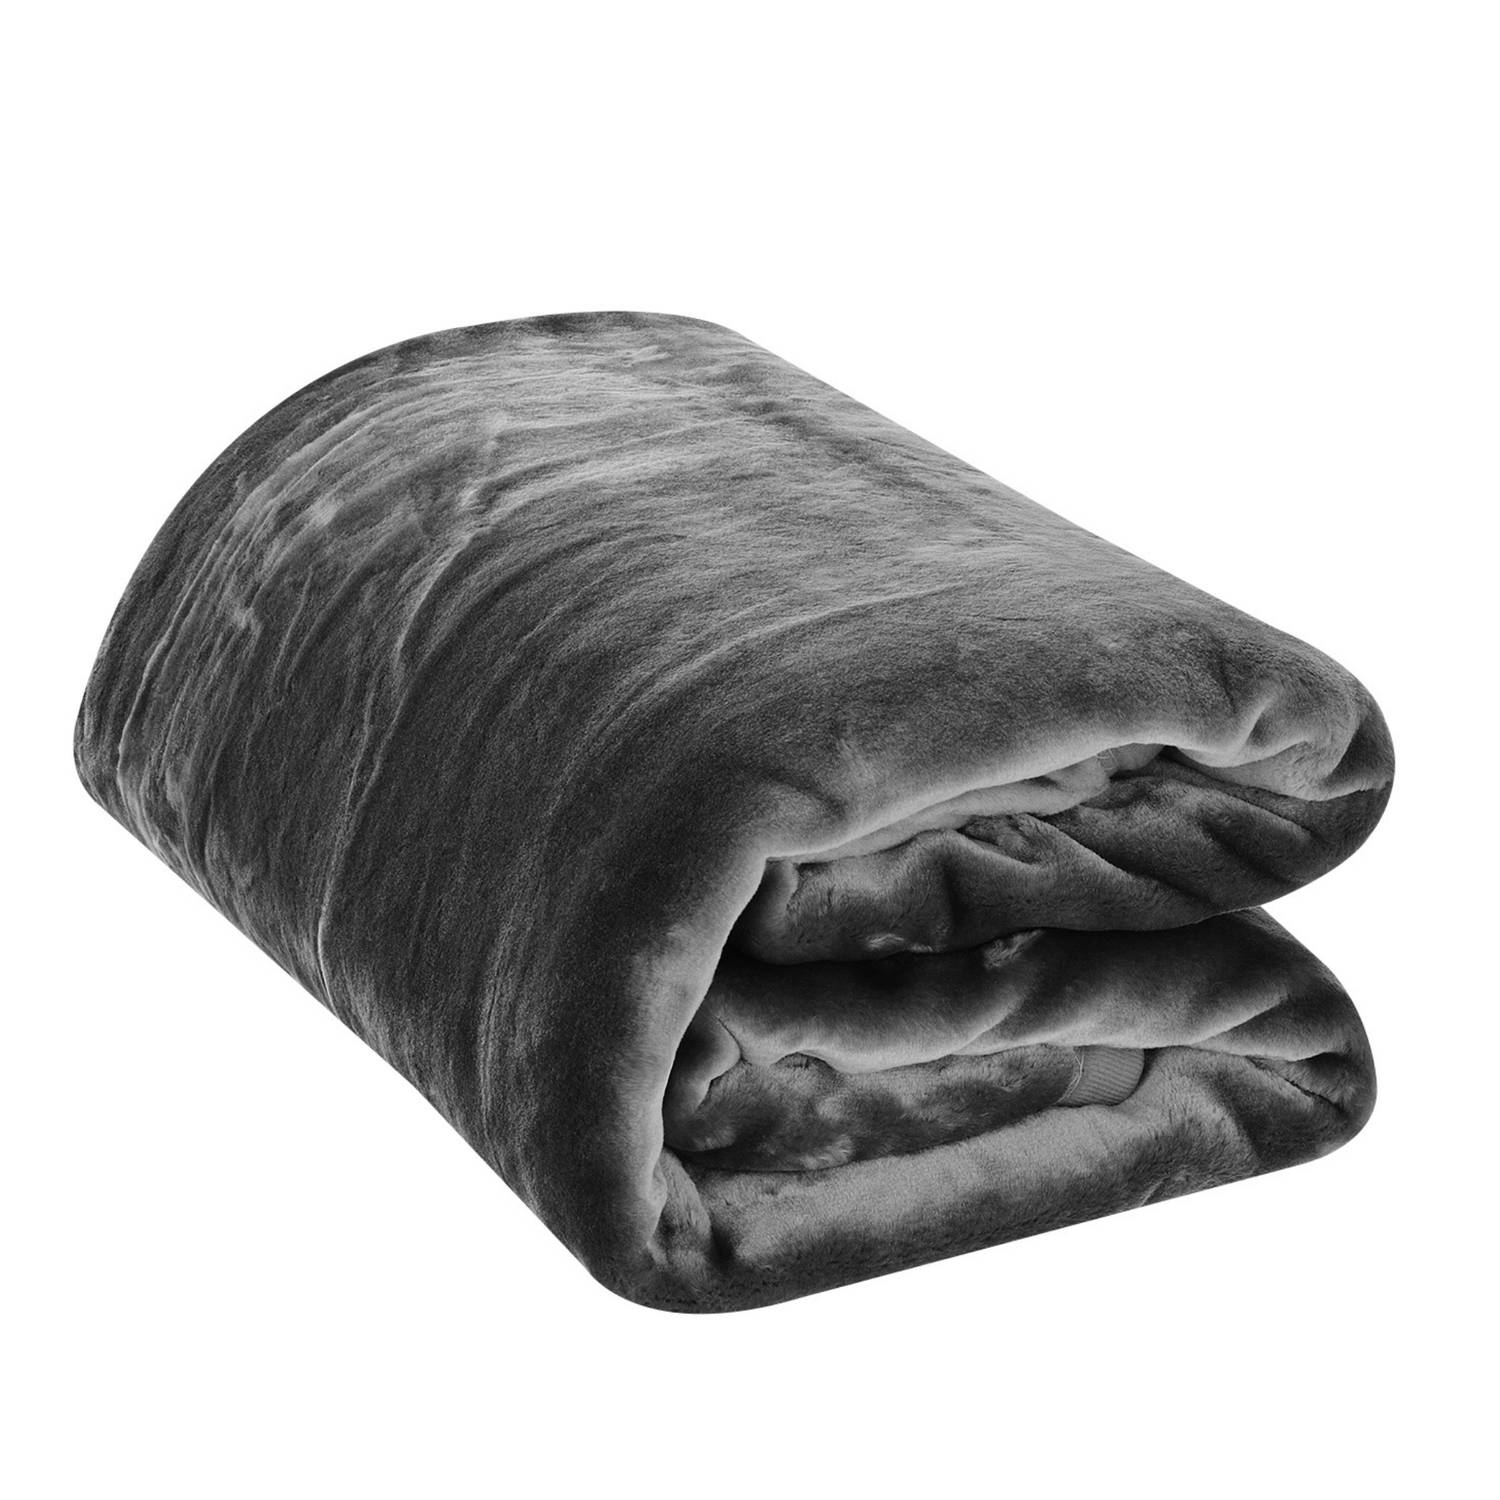 HappyBed Fleexe deken grijs | 150x200 cm - Heerlijk zacht fleece plaid - Warmte deken - Woon deken - Bankhoes Sprei - deken